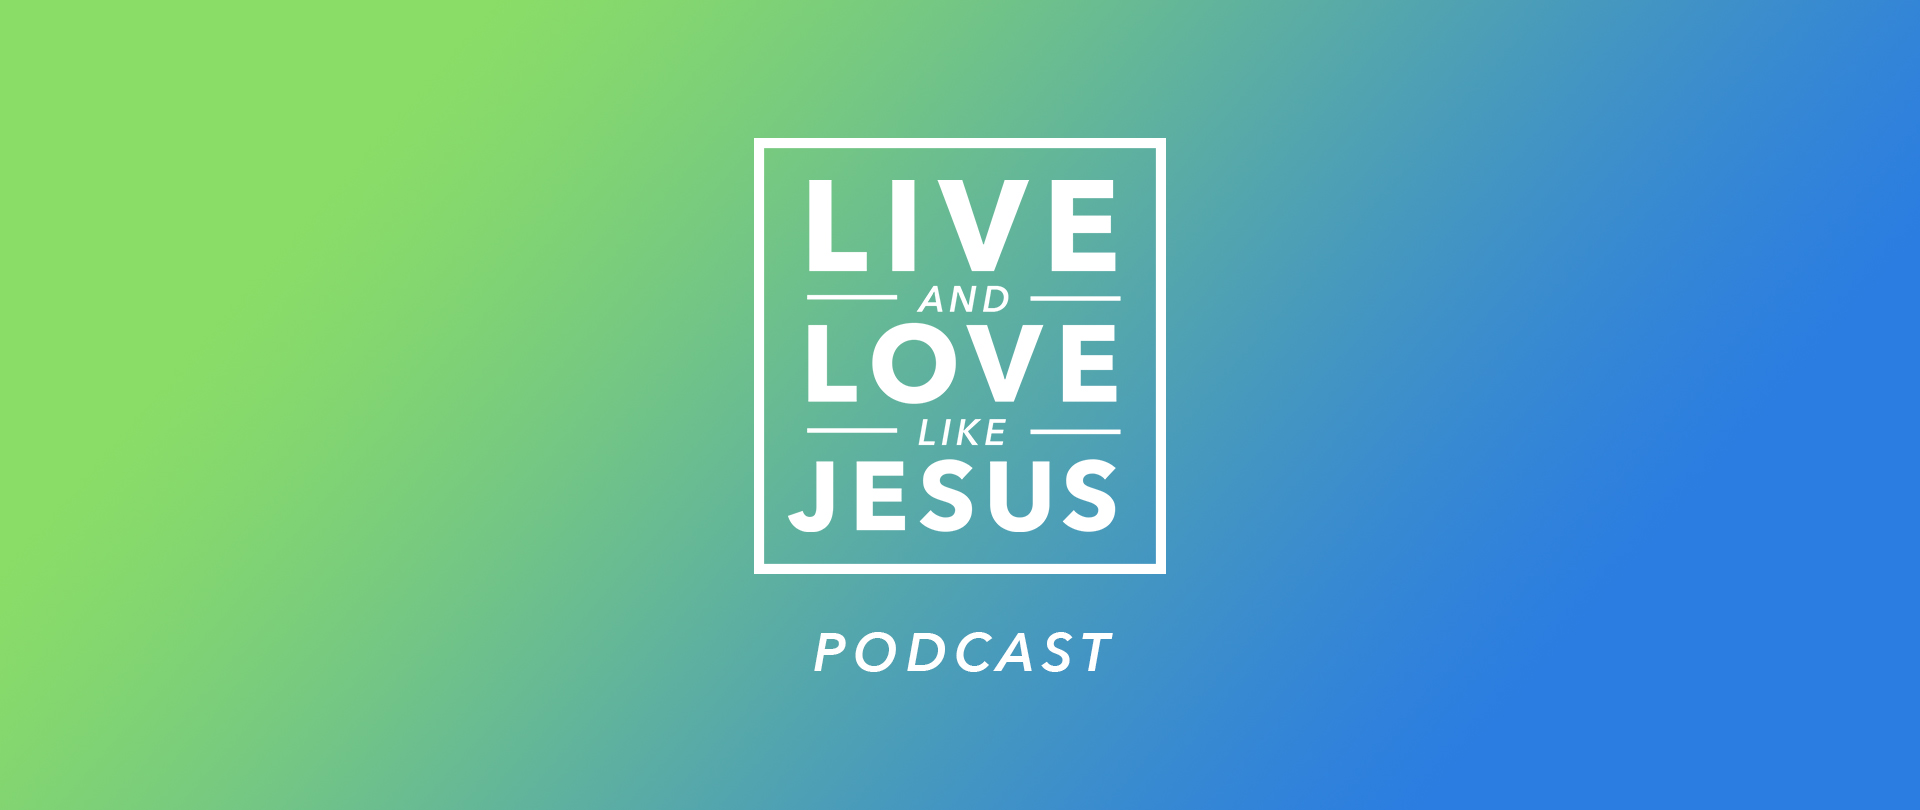 Live and Love Like Jesus
Podcast
